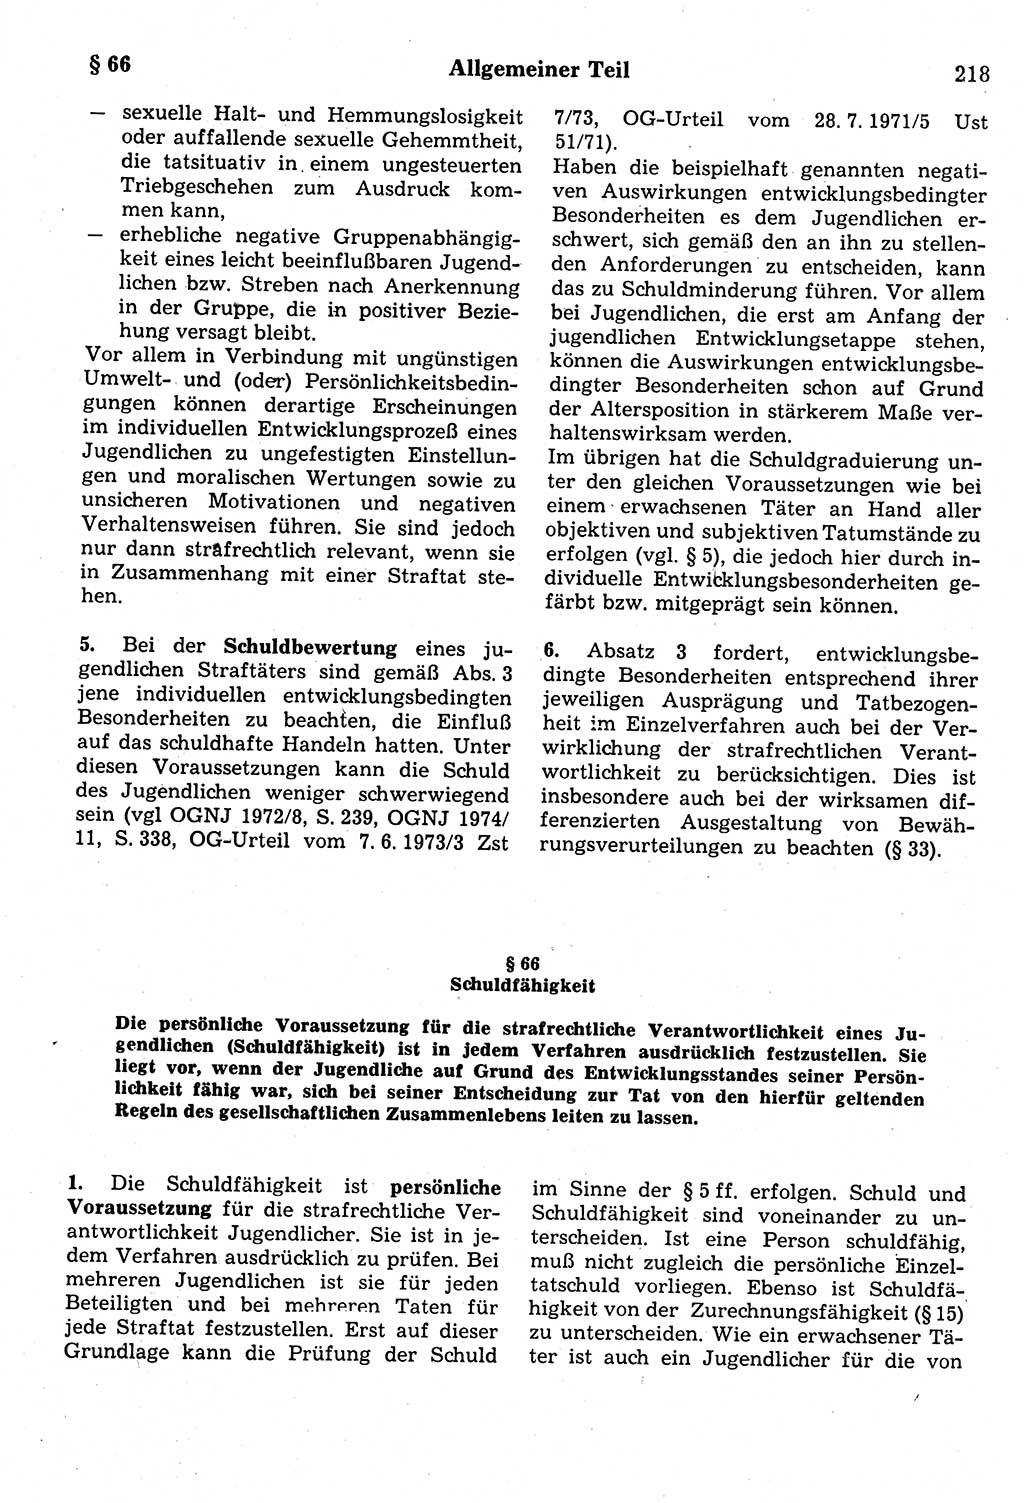 Strafrecht der Deutschen Demokratischen Republik (DDR), Kommentar zum Strafgesetzbuch (StGB) 1987, Seite 218 (Strafr. DDR Komm. StGB 1987, S. 218)